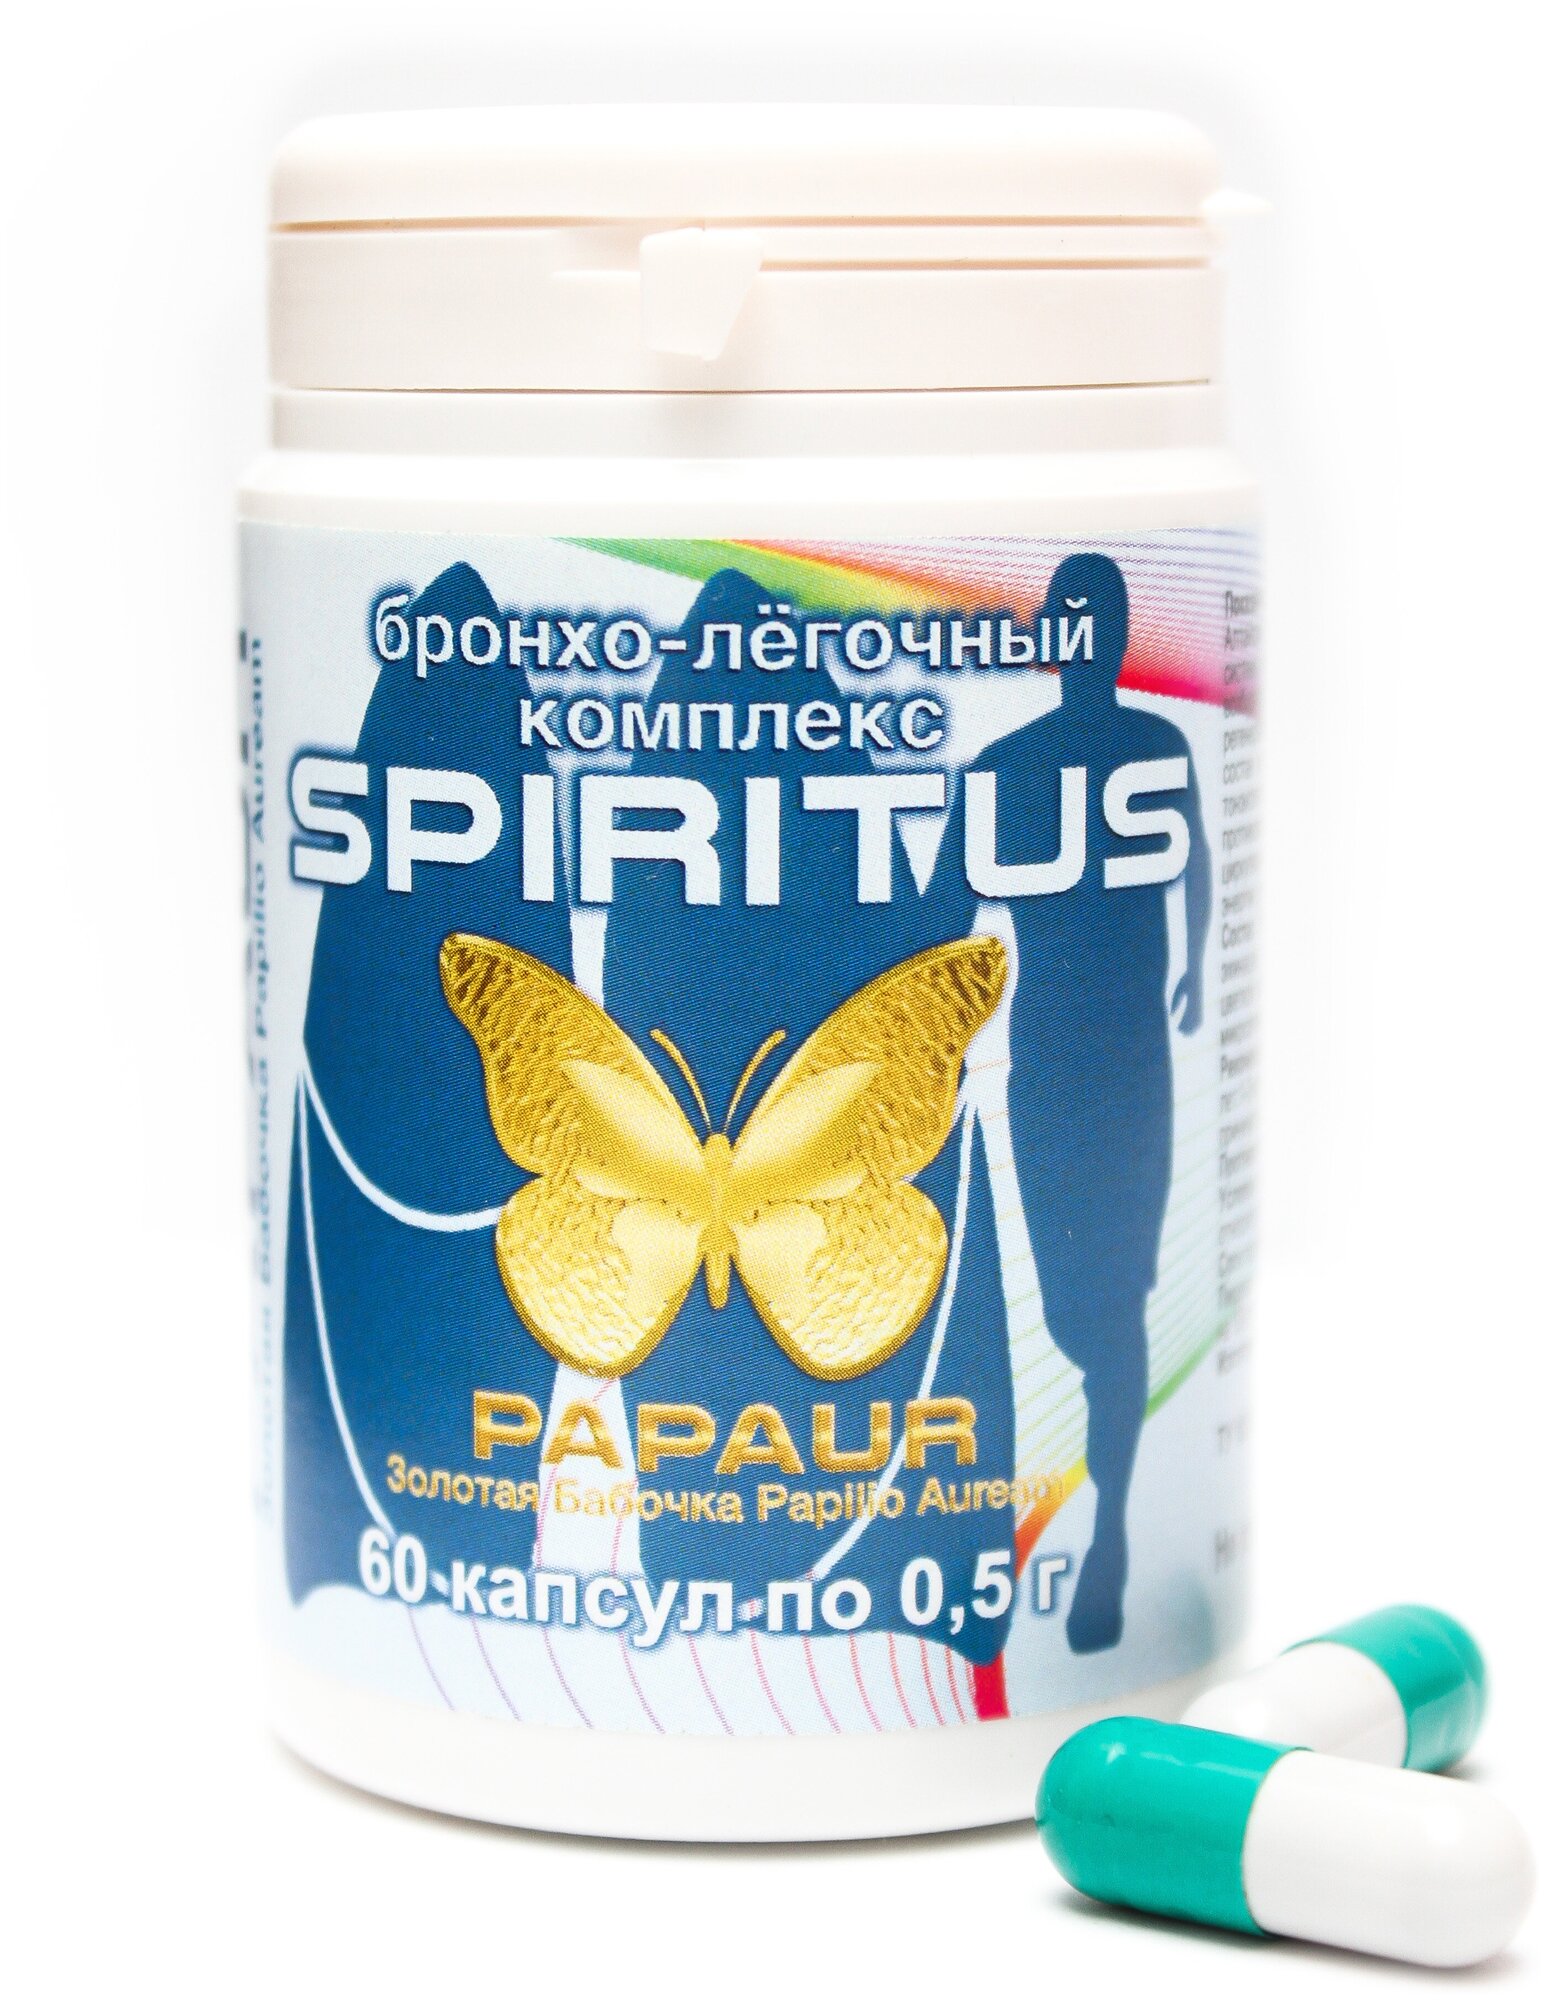 Papaur-Spiritus. Бронхолёгочный натуральный комплекс с экстрактами трав. 60 капсул по 05 г. Месячный курс.